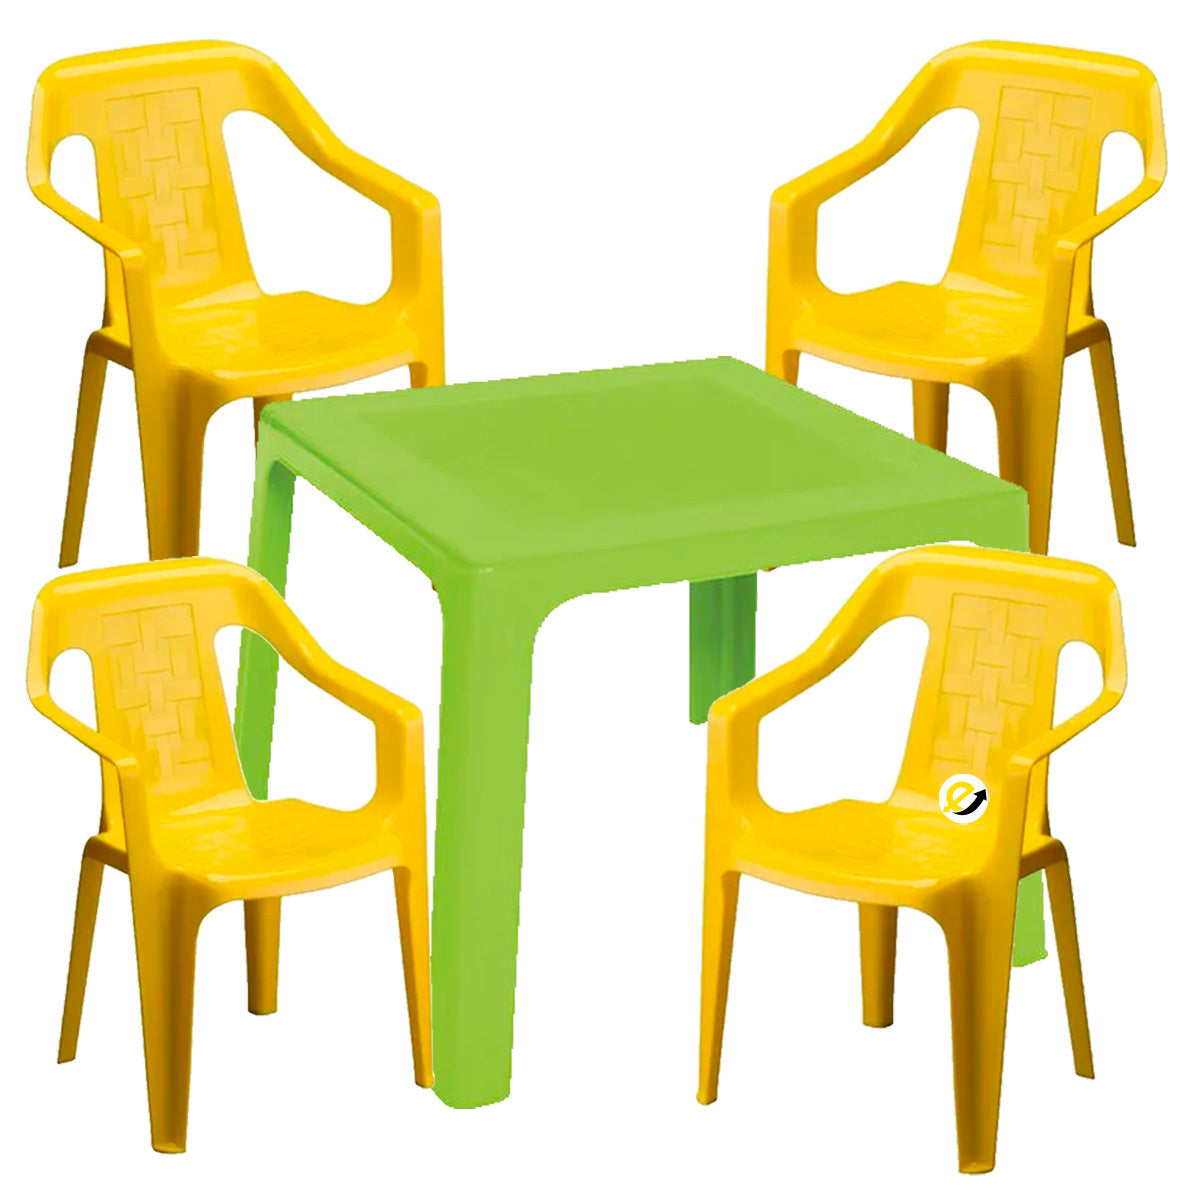 Combo mesa infantil + 4 sillas Rimax l – e siete company s.a.s.